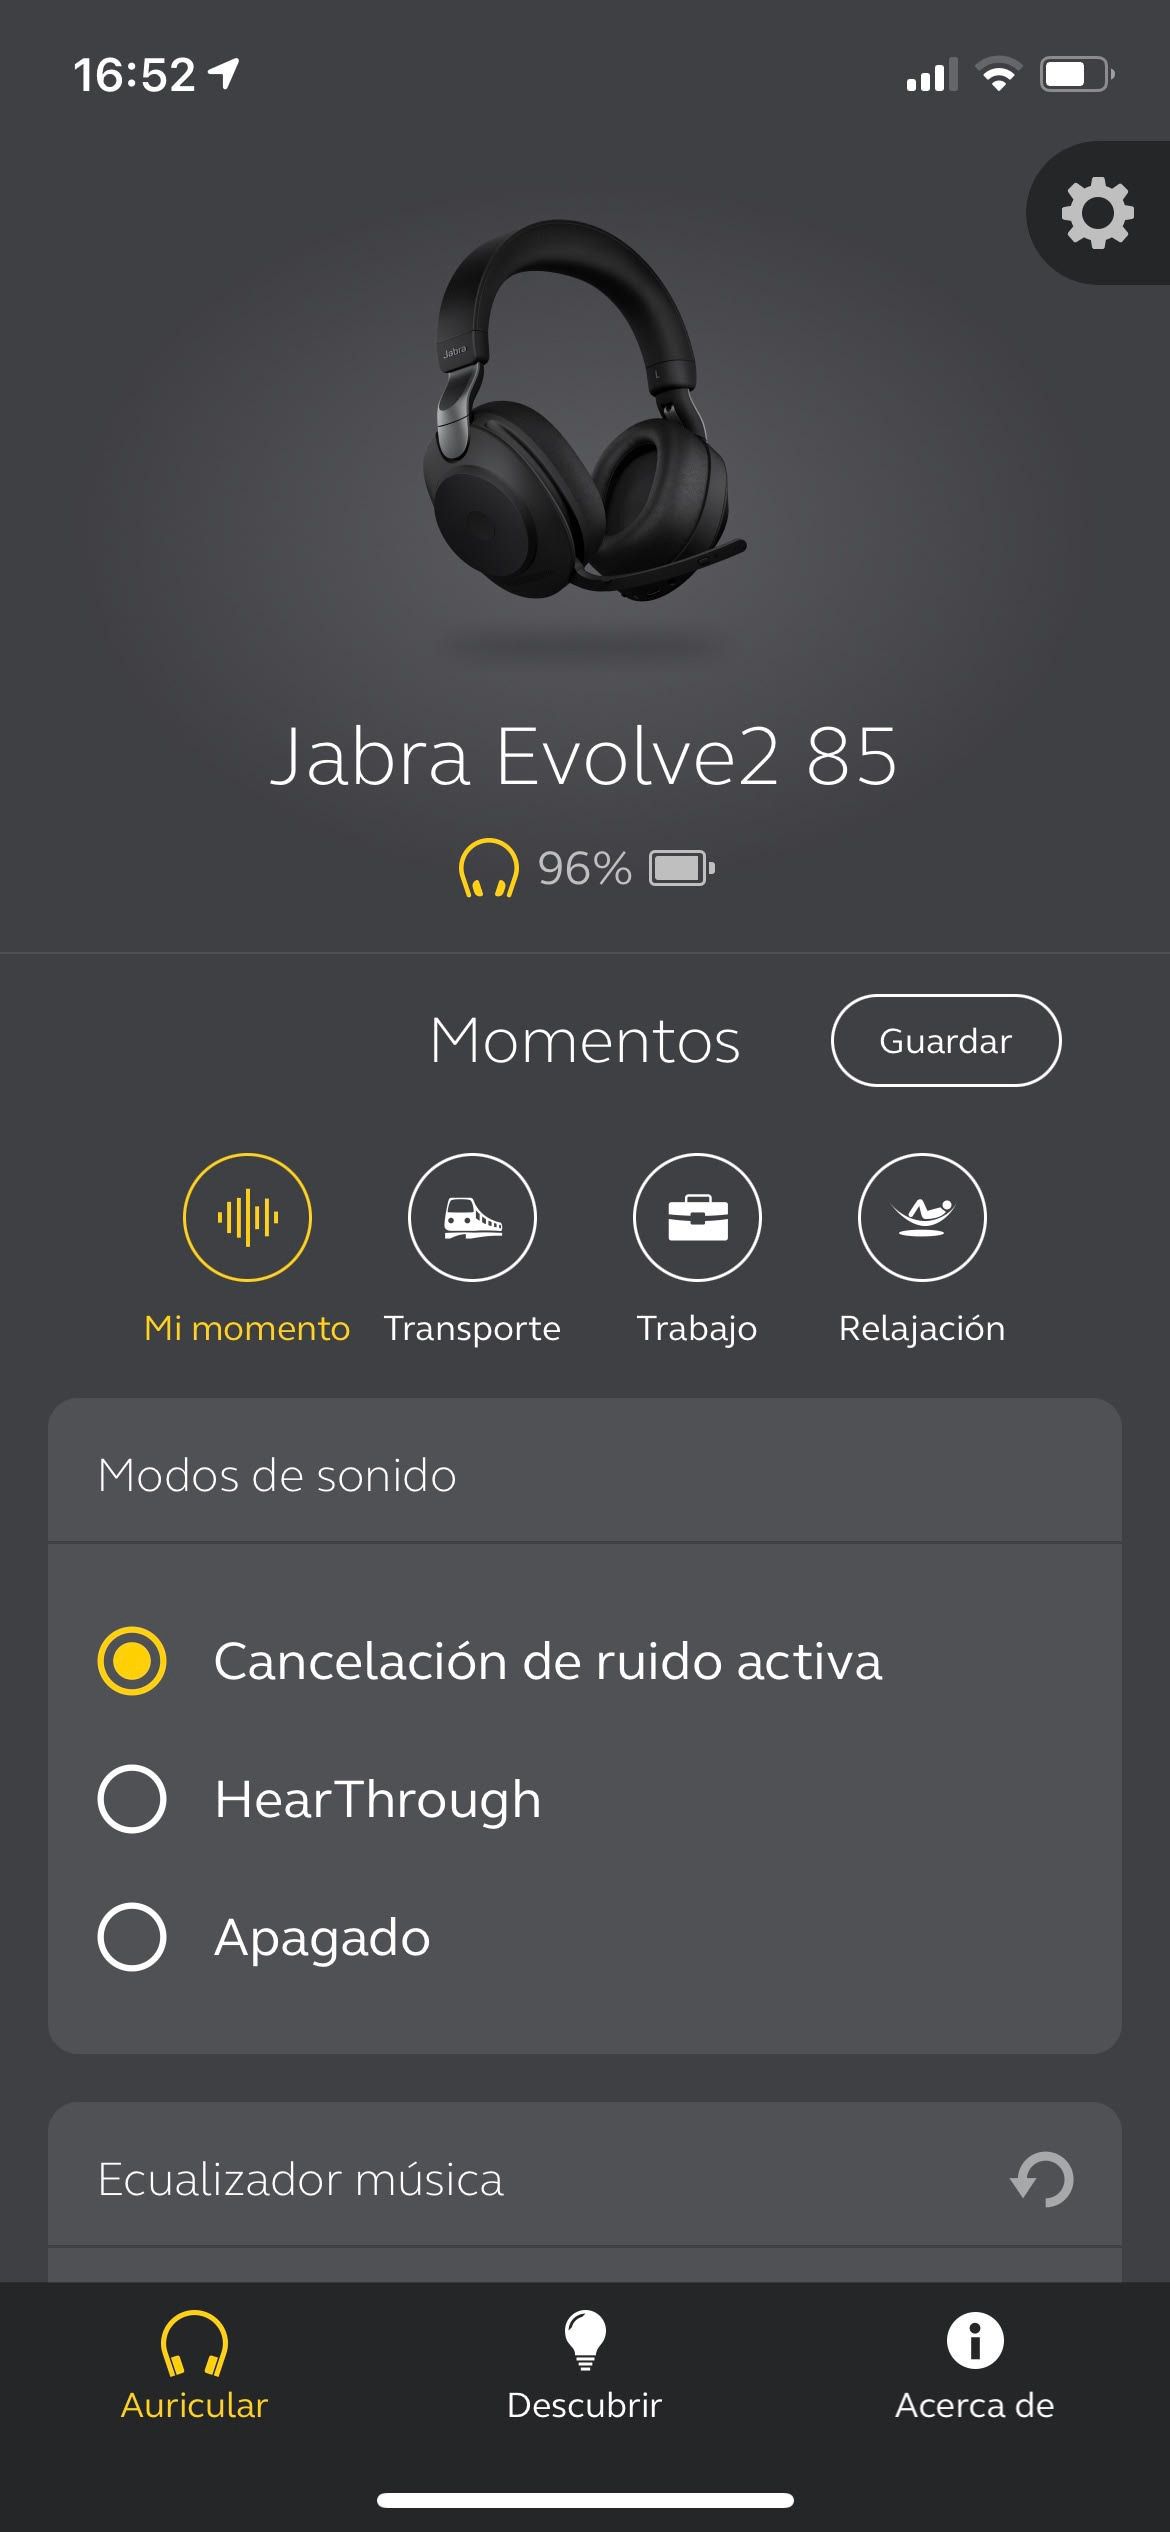 La app Sound+ para configurar los cascos es muy completa. La lástima es que la guía de voz no esté en español.